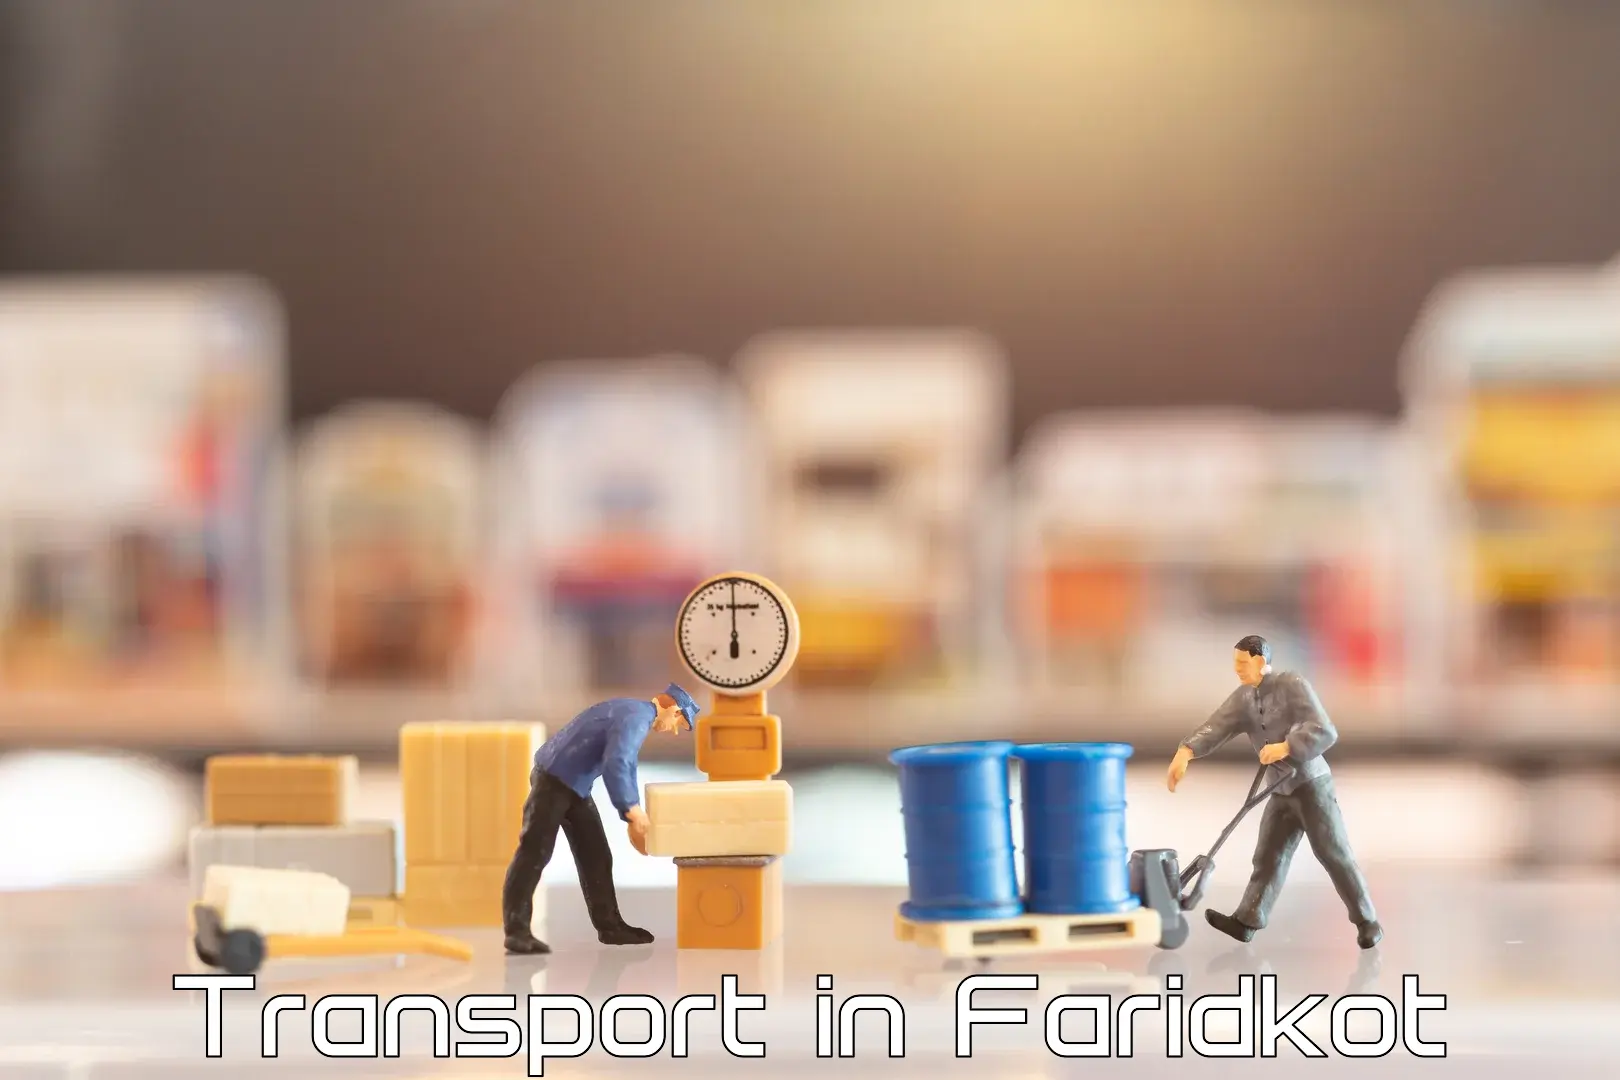 International cargo transportation services in Faridkot